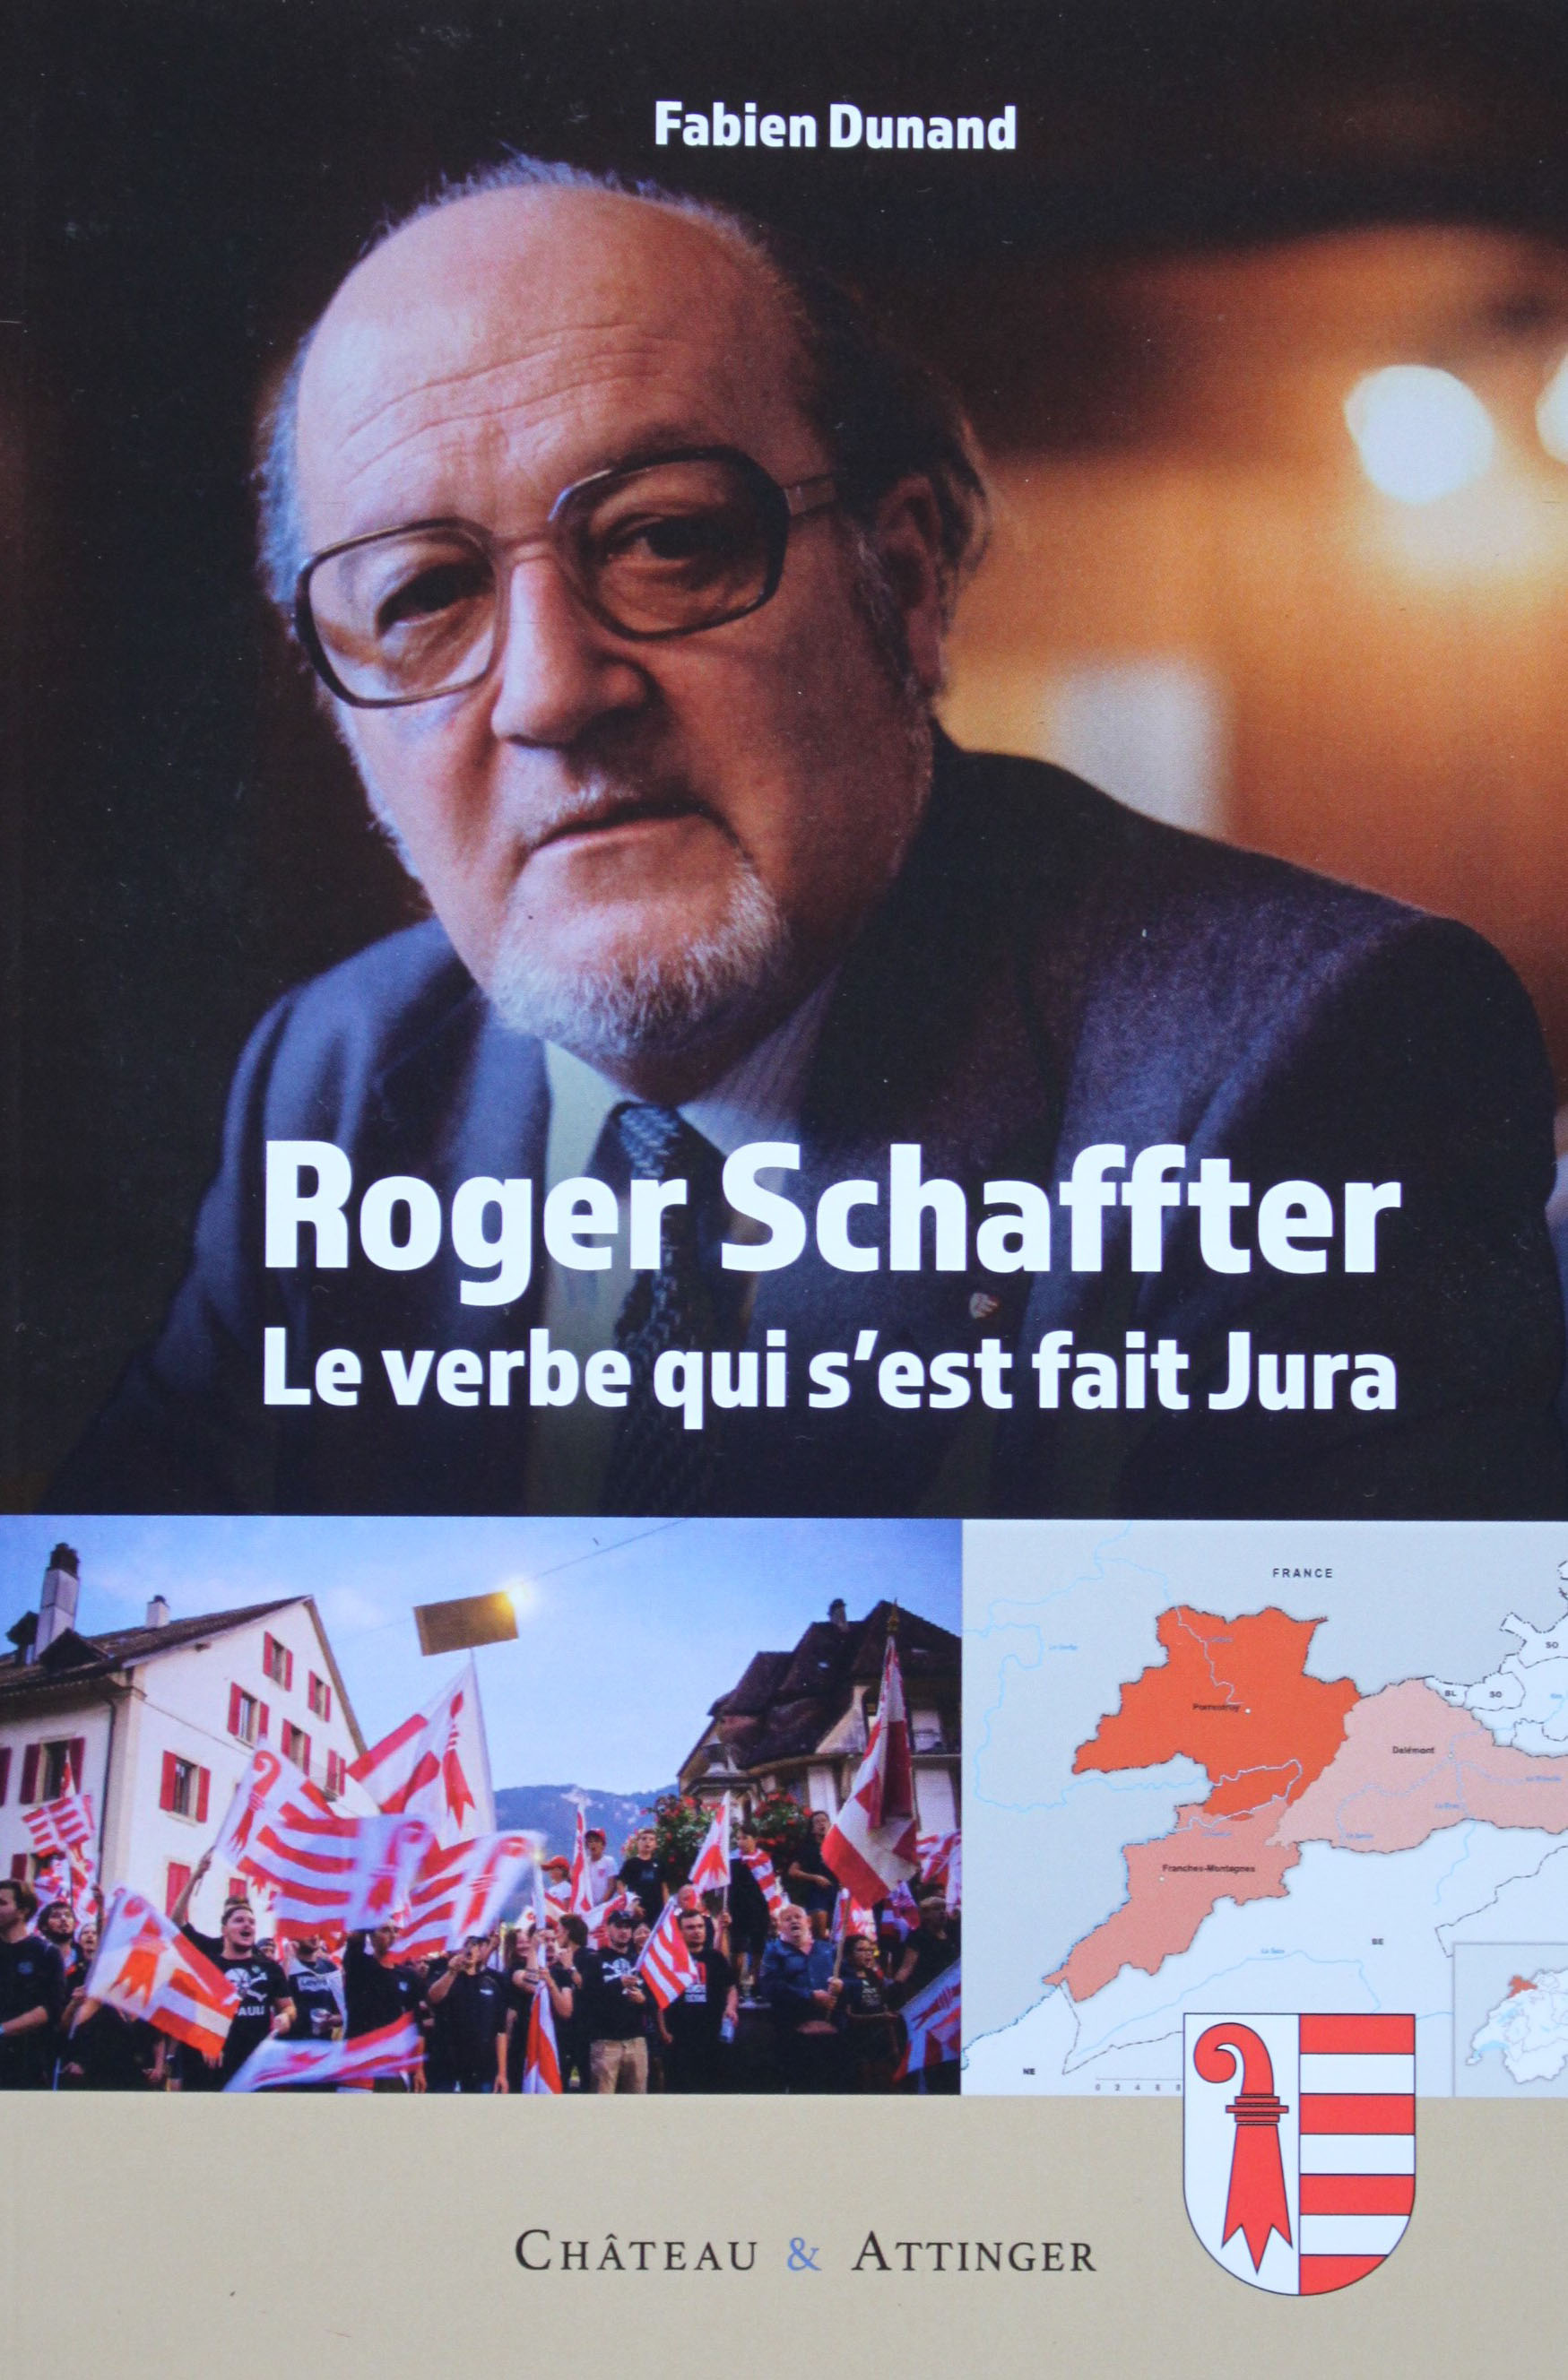 Livre catégorie politique et histoire : "Roger Schaffter Le verbe qui s